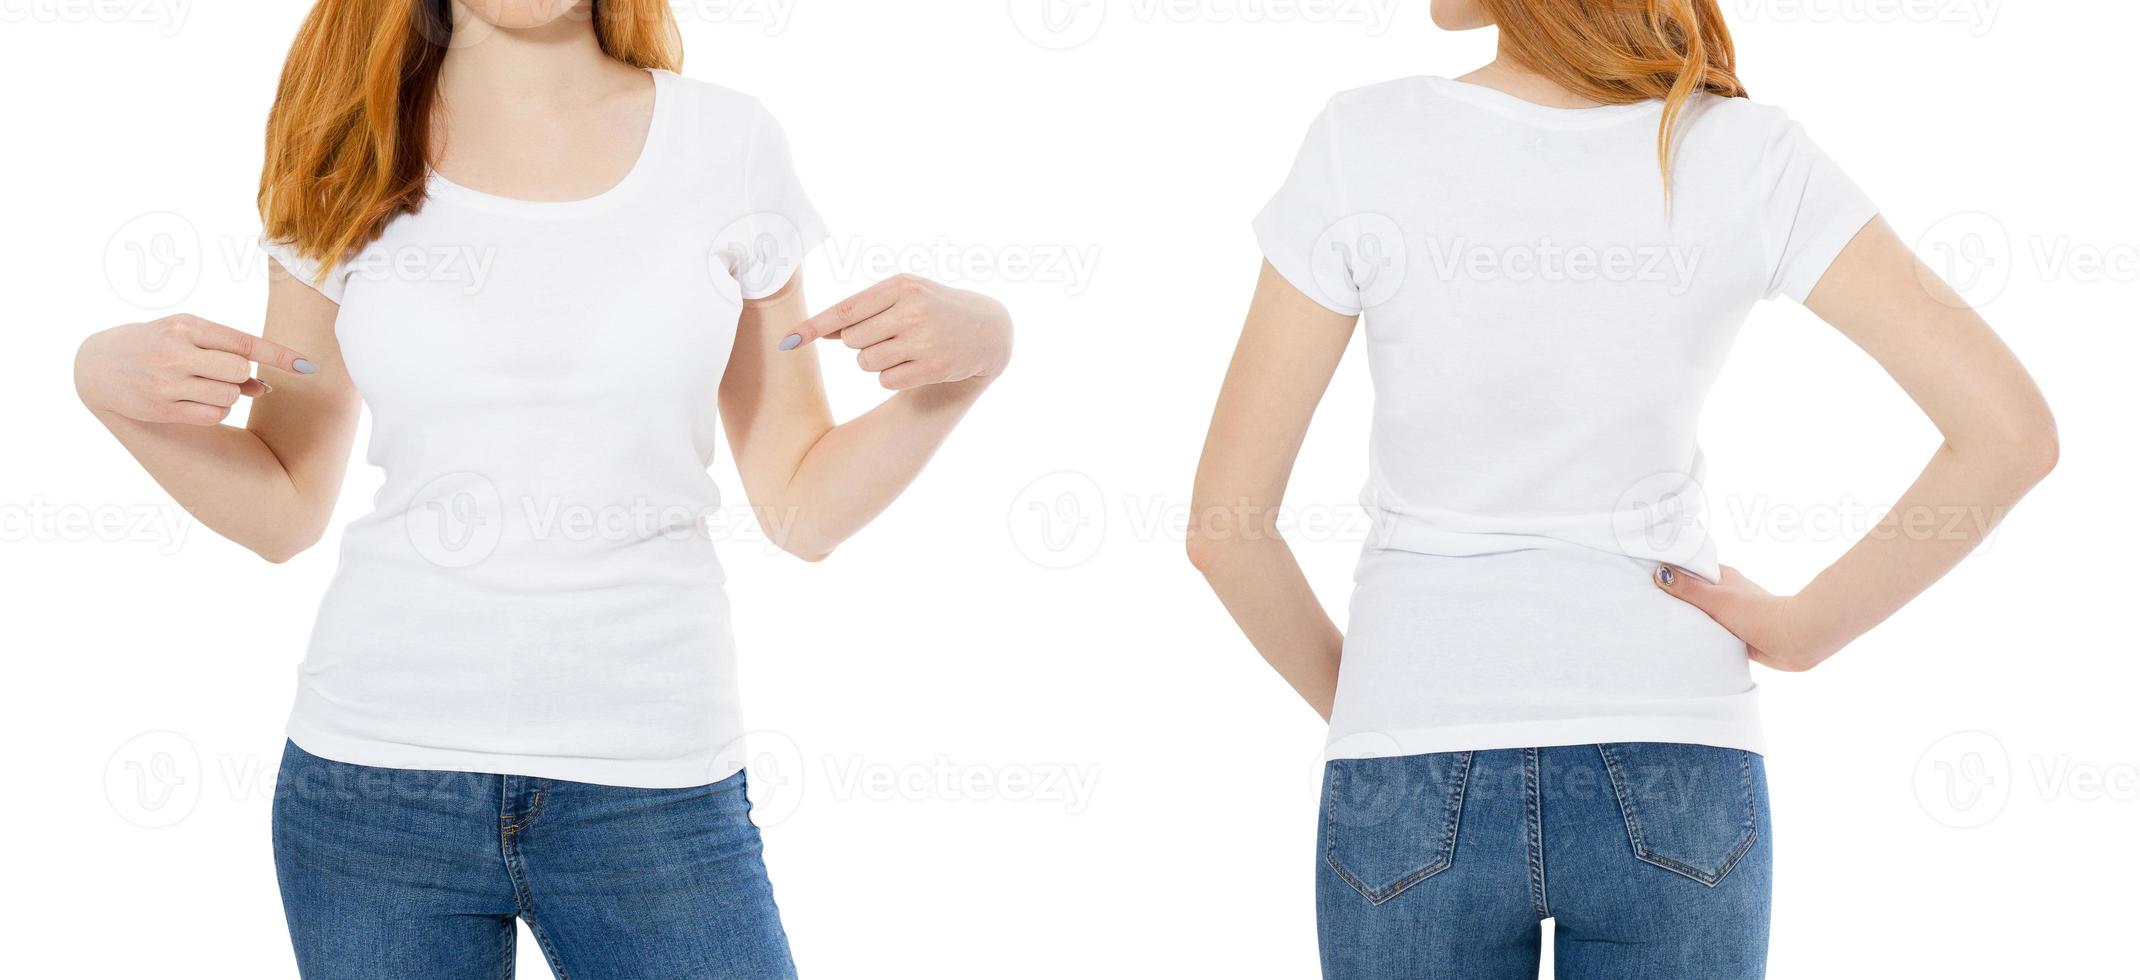 weißes T-Shirt auf einer jungen roten Haarmädchenschablone lokalisiert auf weißer Hintergrundrückseite und -vorderseite mit Beschneidungspfad. Frau weißes T-Shirt, Dame T-Shirt Mock-up foto